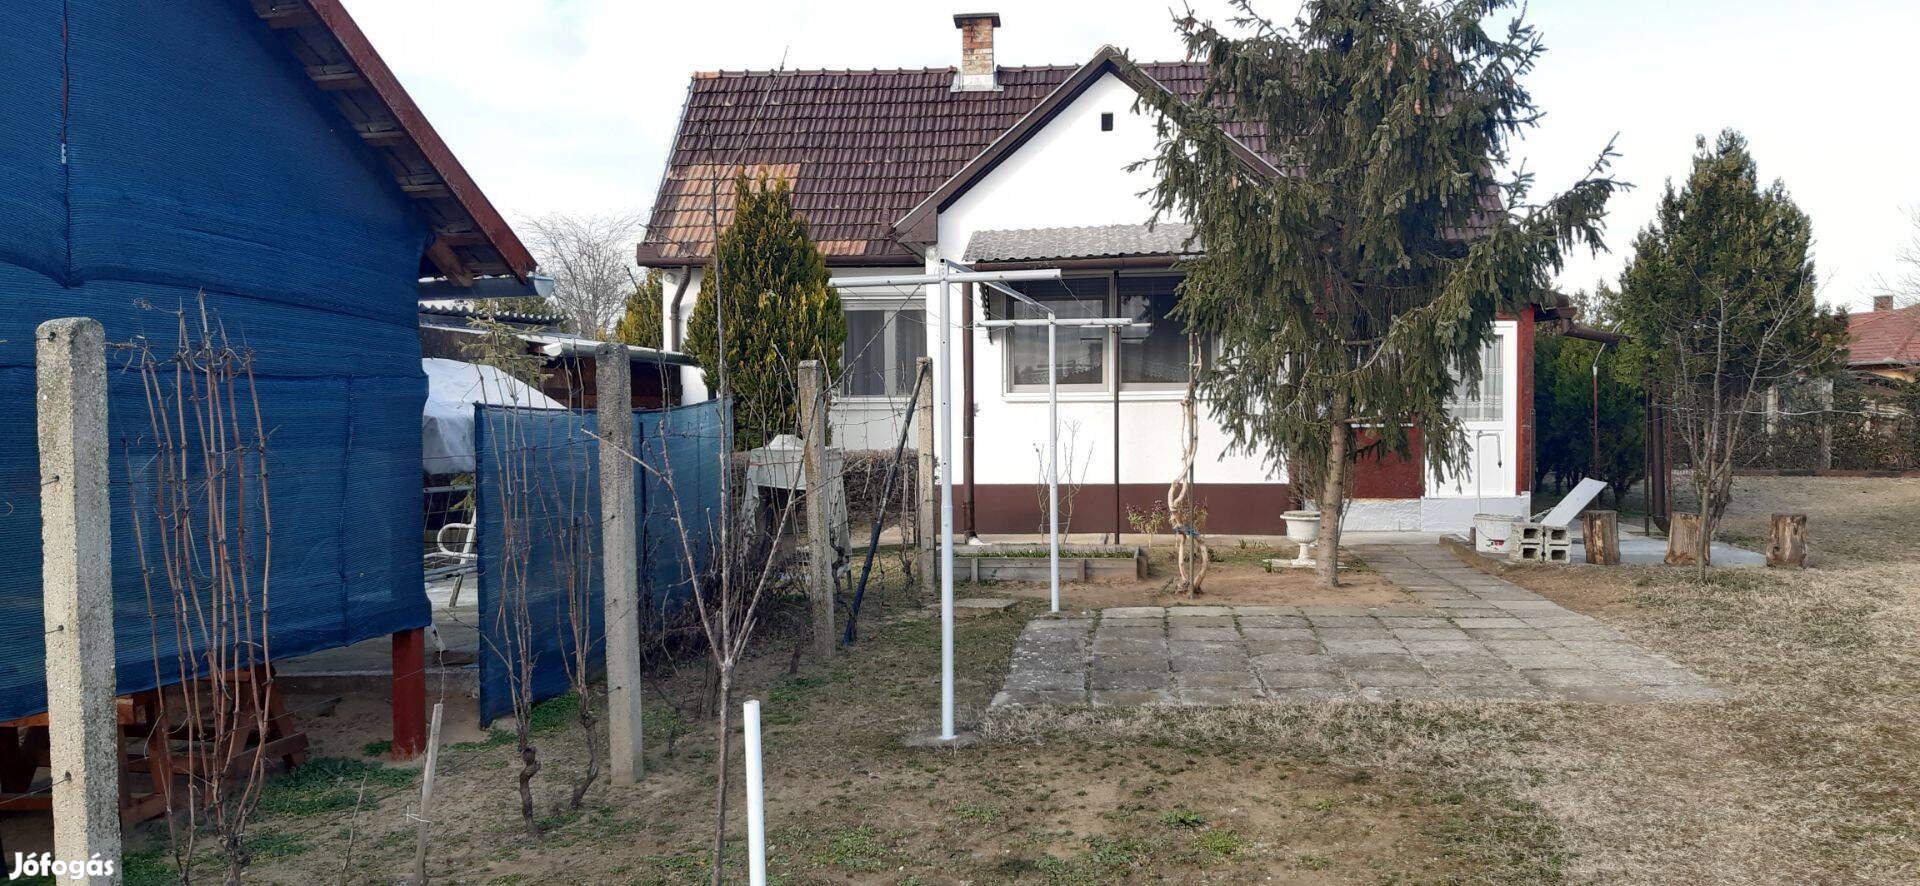 Debrecen, Kerekestelep, 48 m2-es családi ház, nagy telekkel eladó!